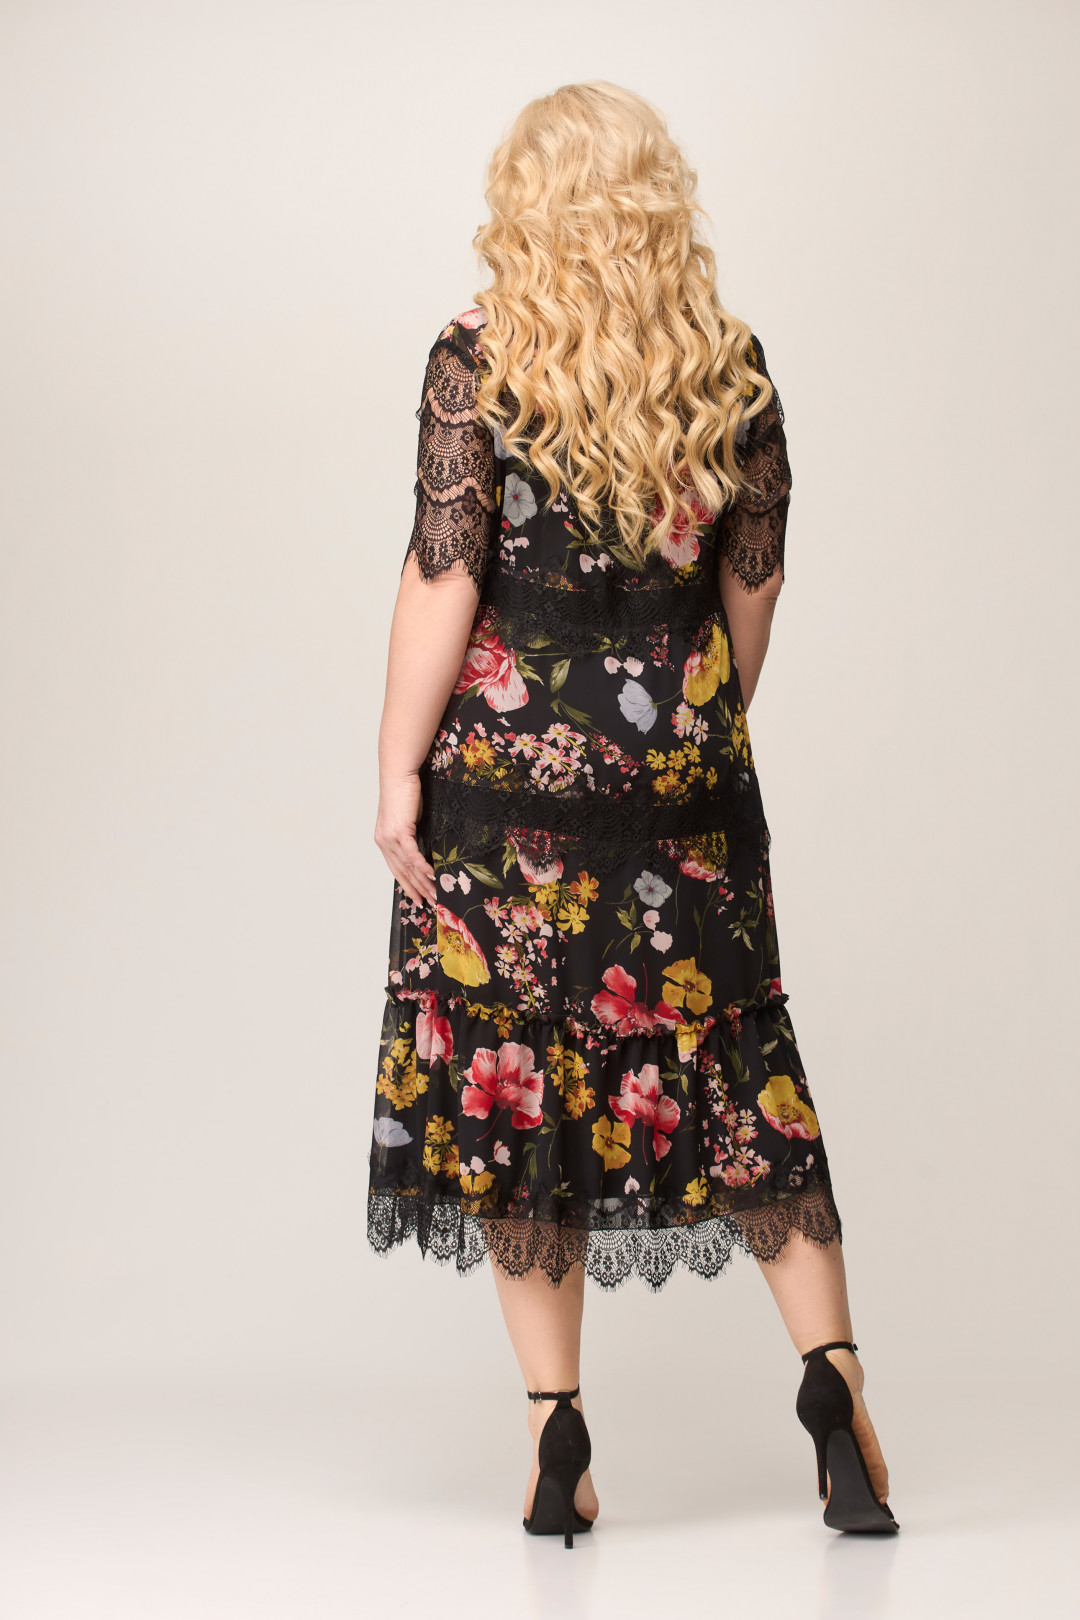 Платье Светлана-Стиль 1505 черный+цветы